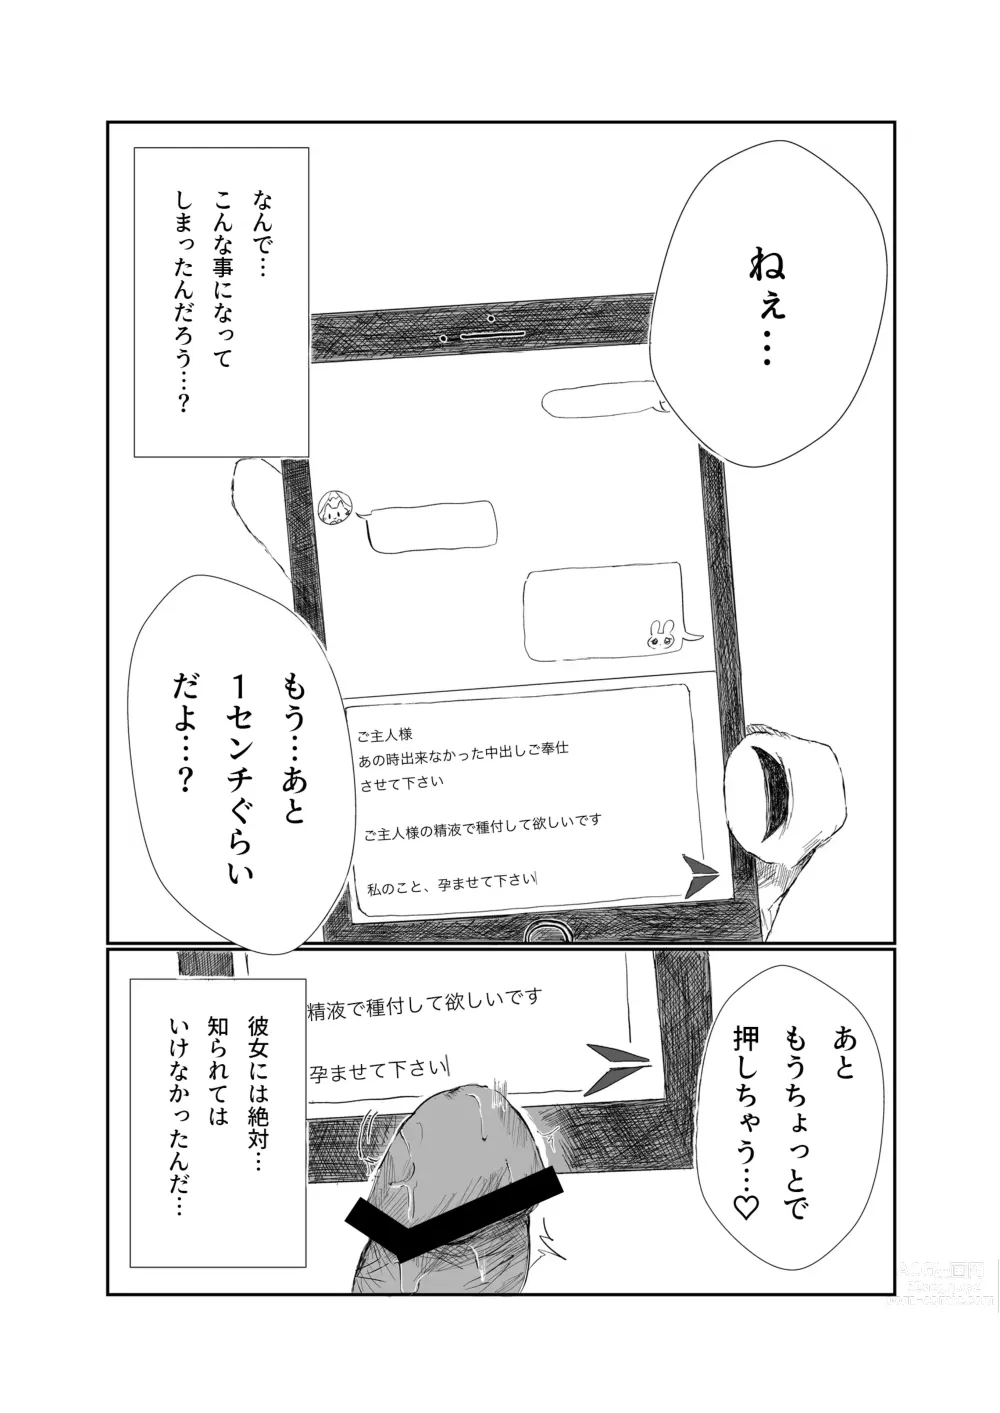 Page 1 of doujinshi Mitsu no Houkoku - Netorare Maso da to Bare de wa Ikenai noni Kanojo no Seitaiken o Kiku no ga Tomerarenai Boku